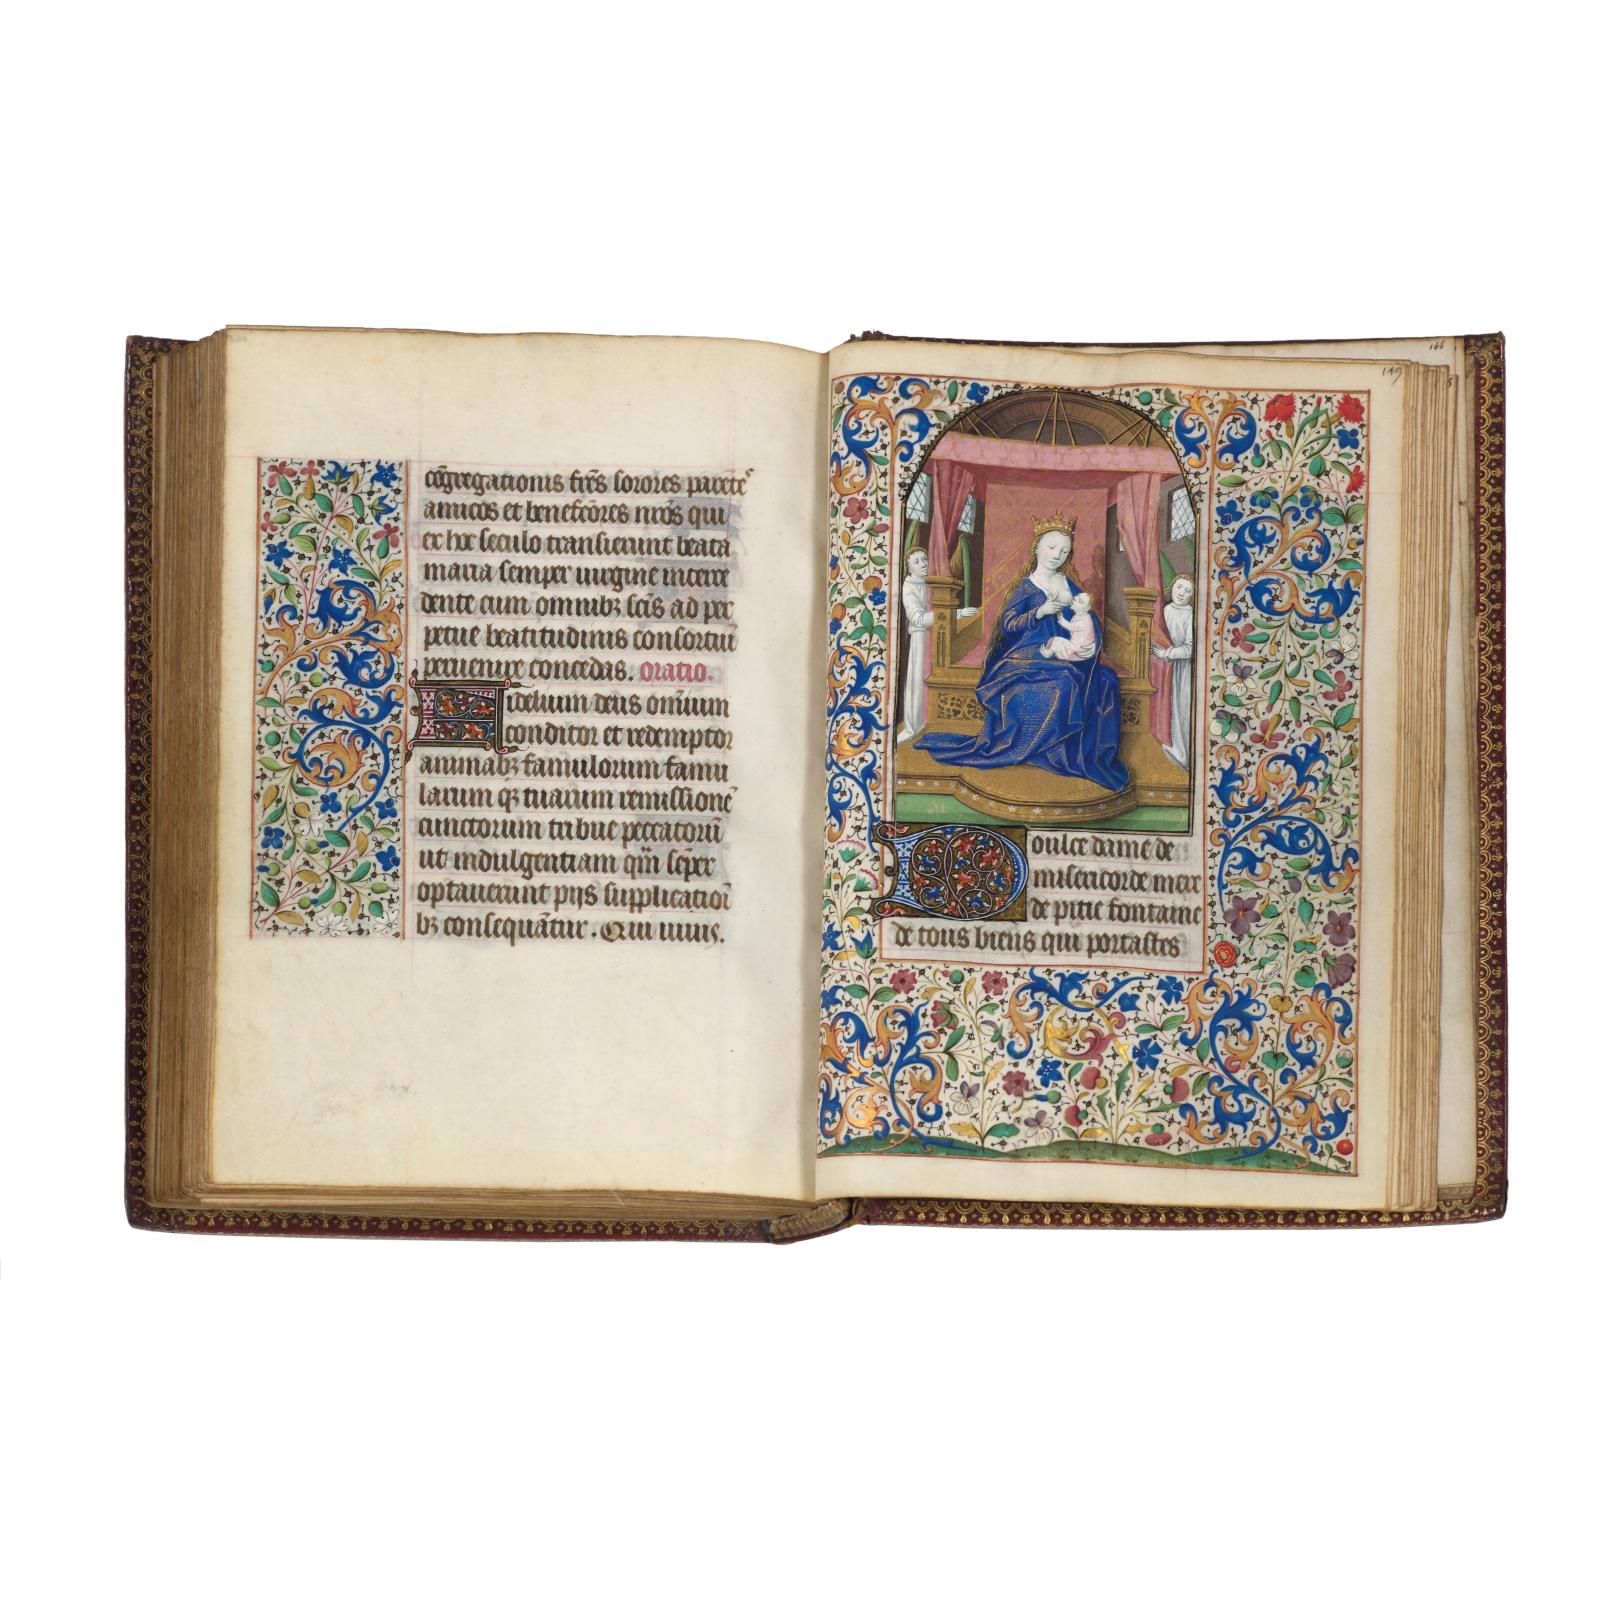 269 760 €Paris, vers 1460. Livre d’heures à l’usage de Paris en latin et en français, manuscrit enluminé sur parchemin par le Maître de Co